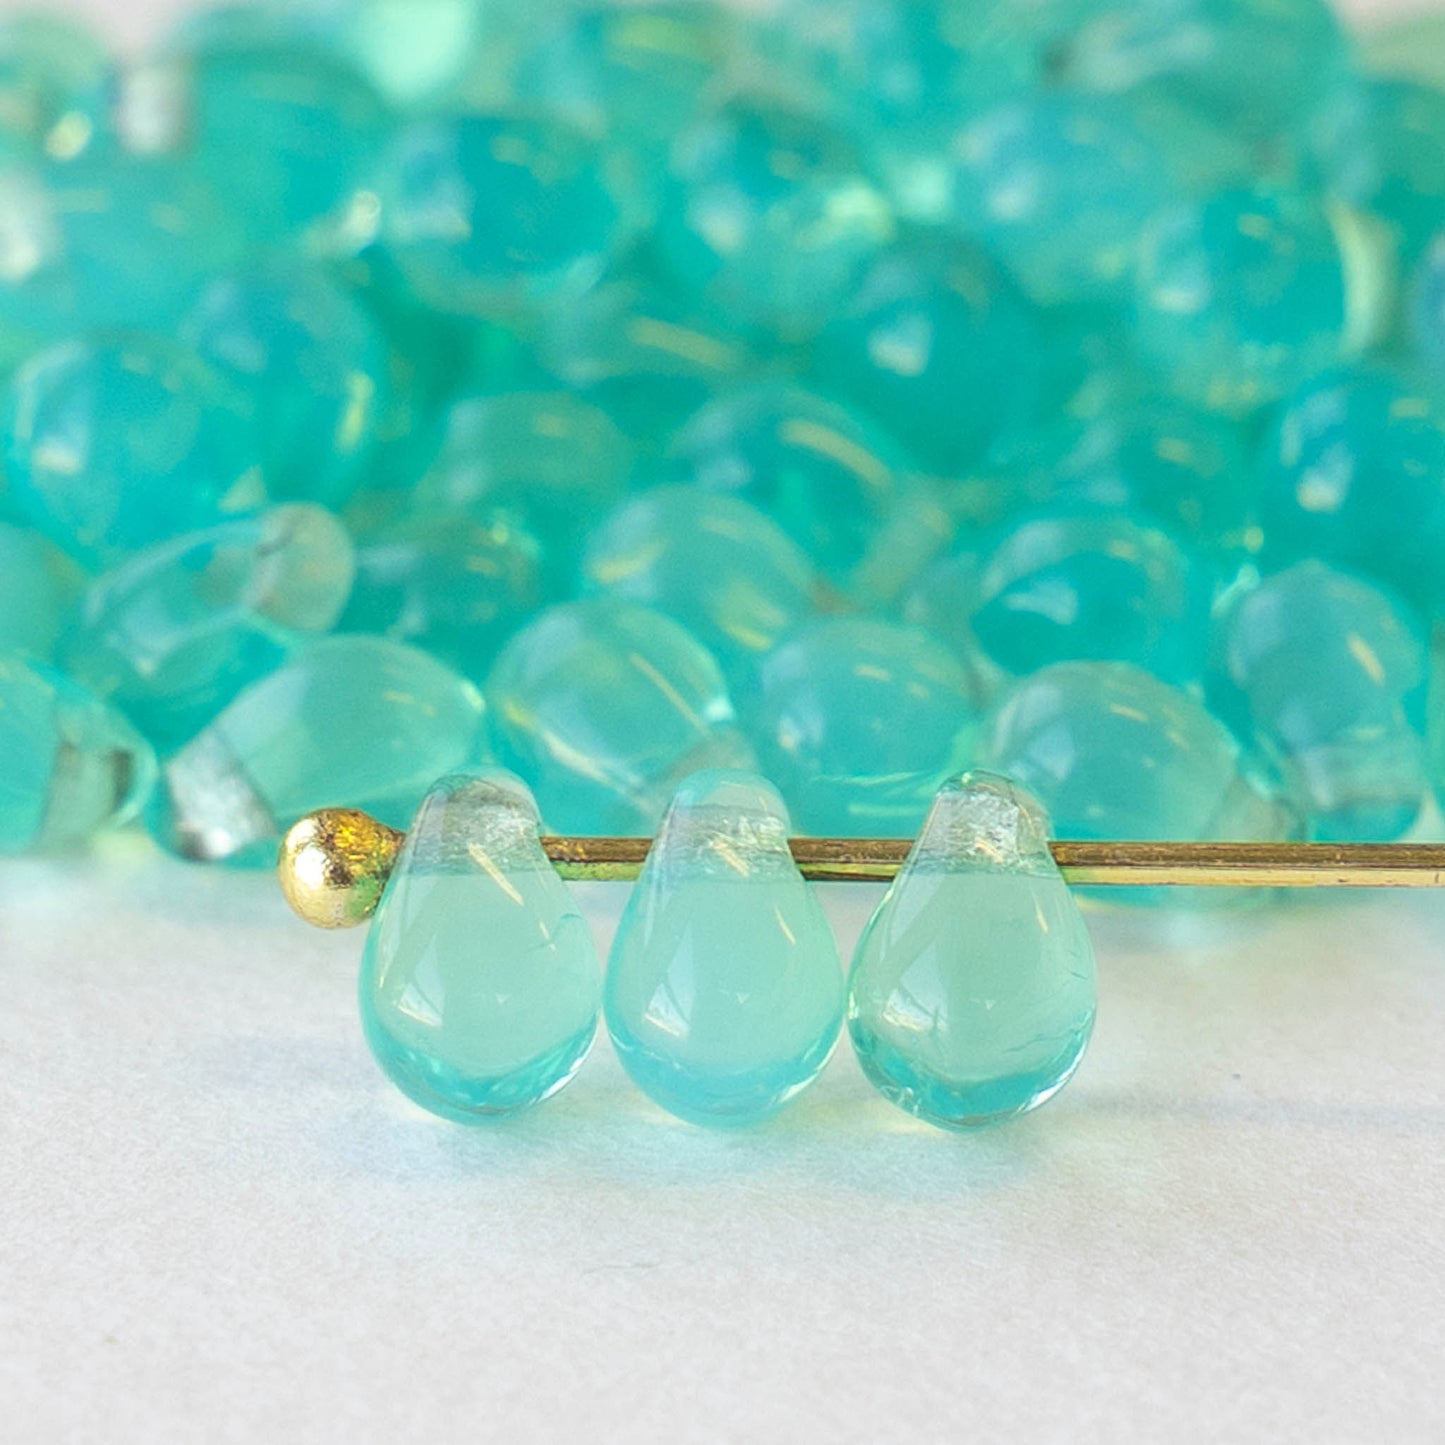 4x6mm Glass Teardrop Beads - Opaline Seafoam ~ 100 beads